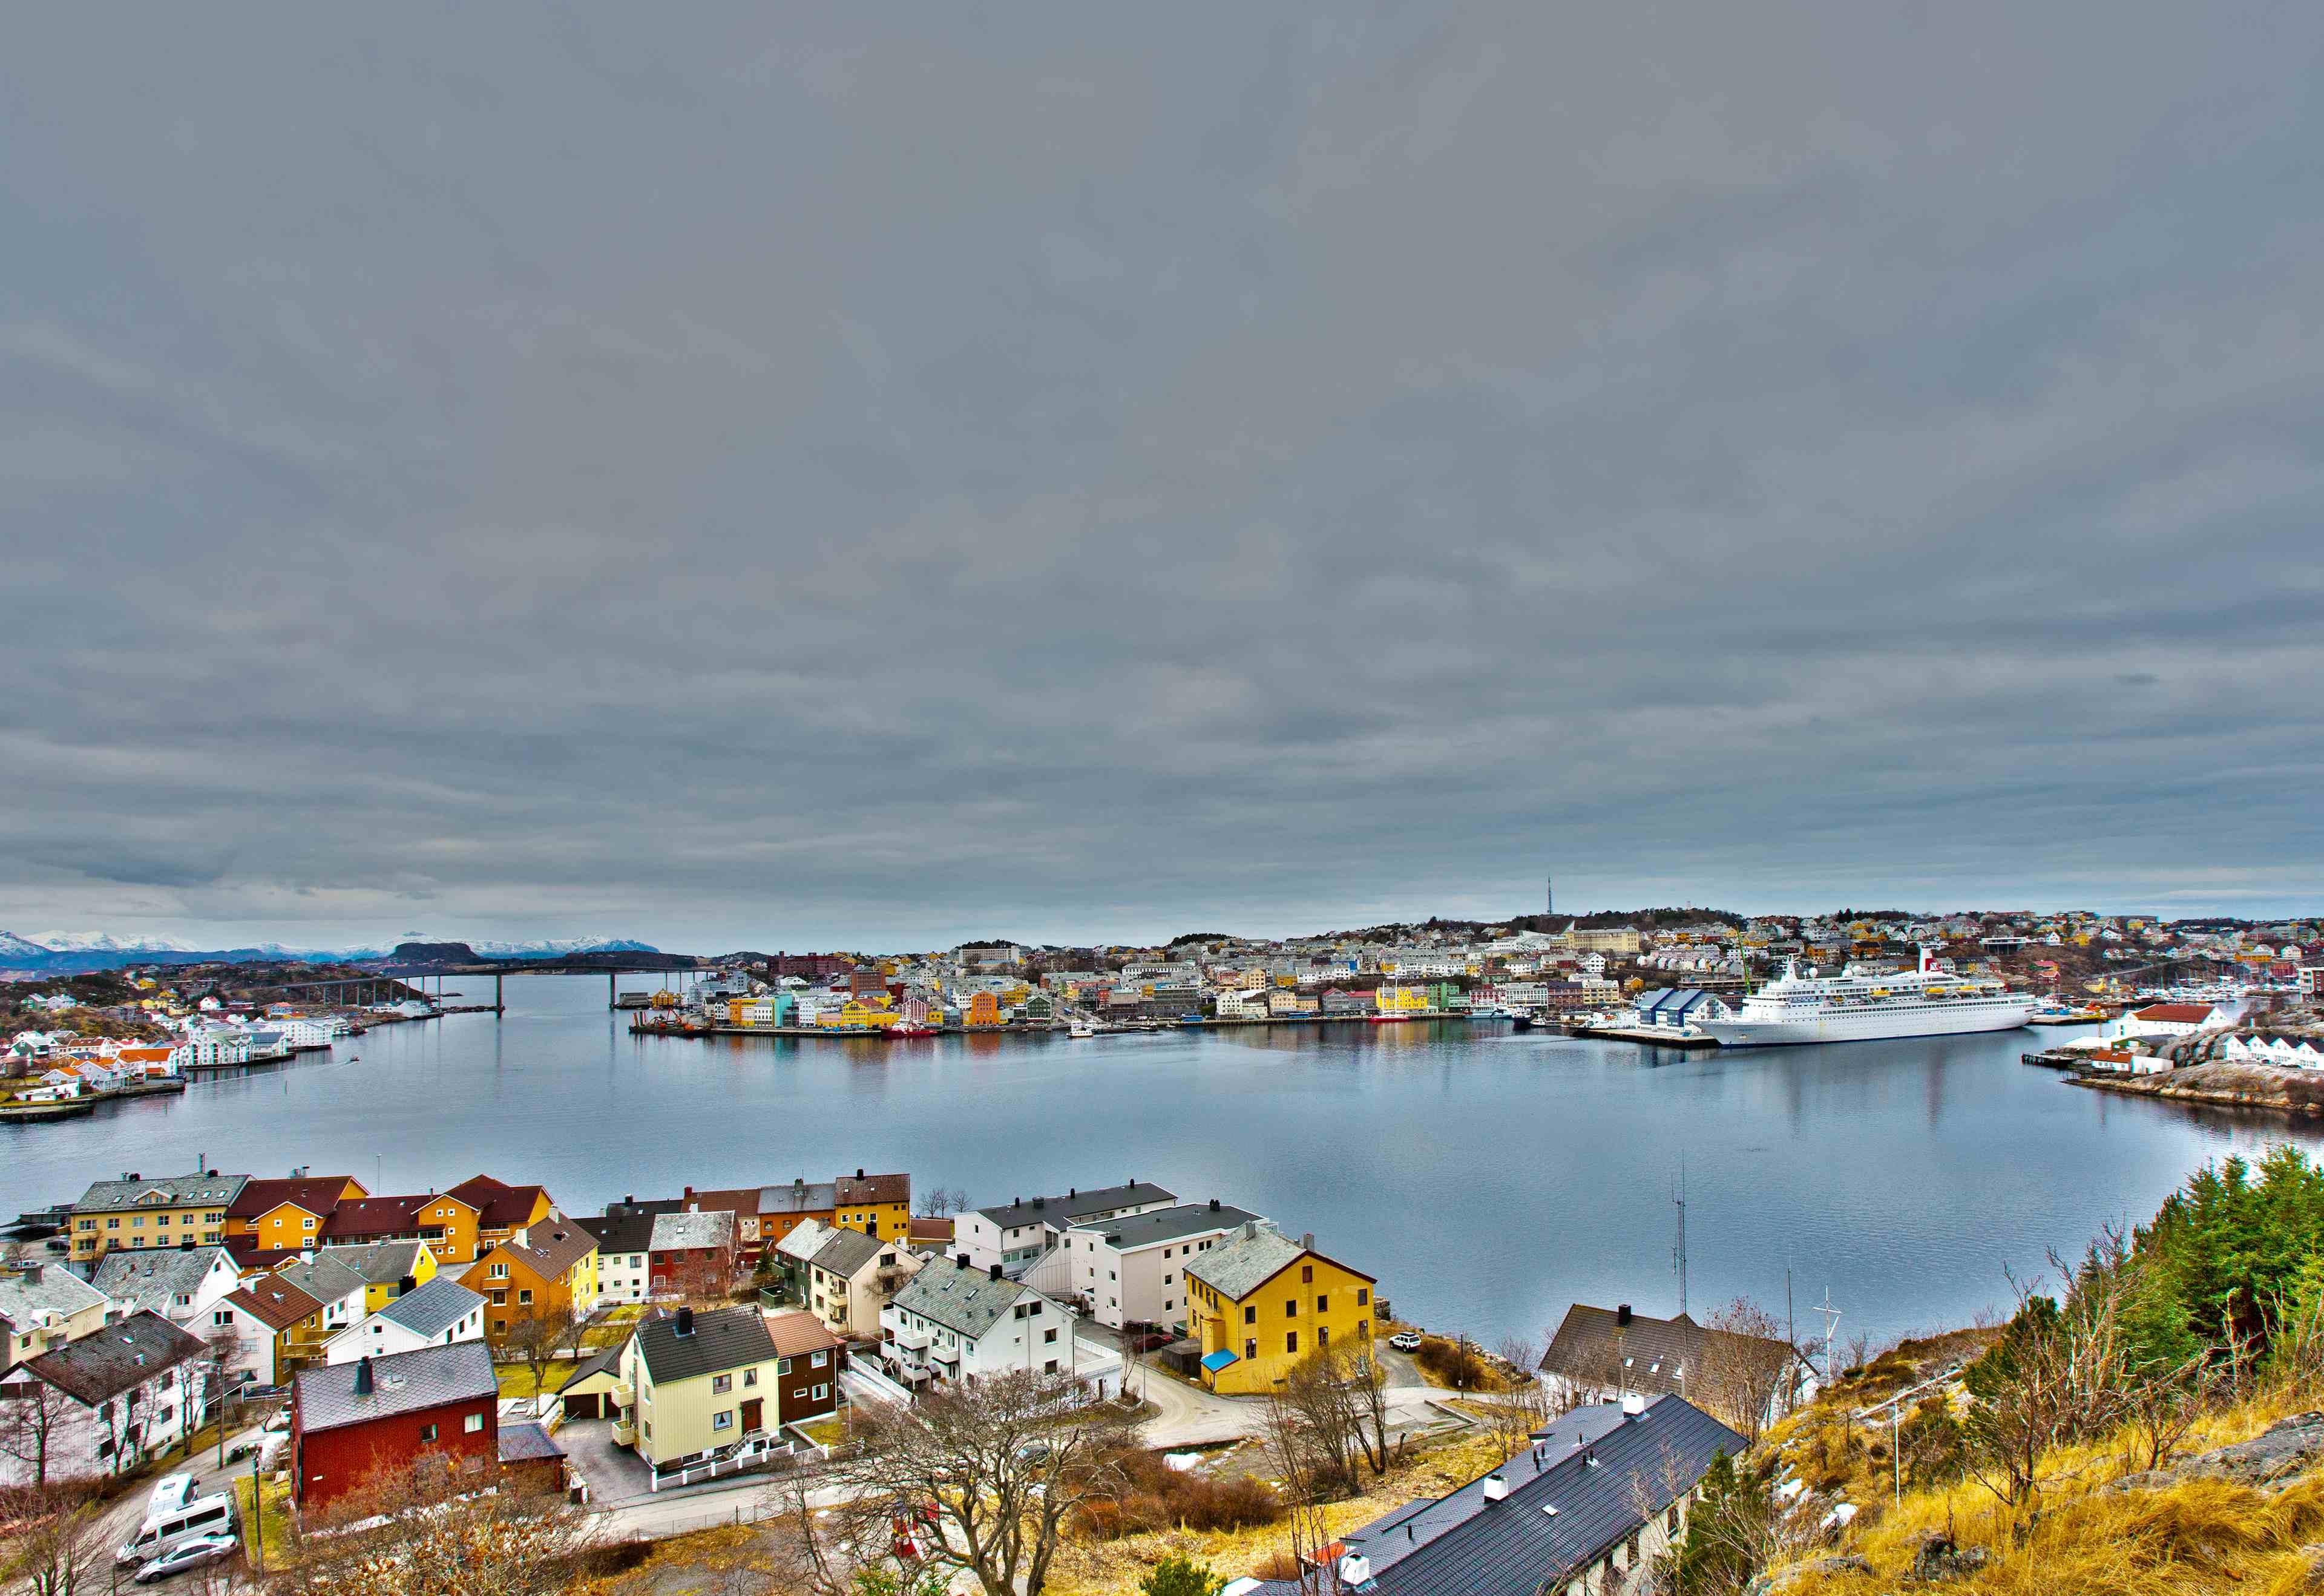 Kristiansund town